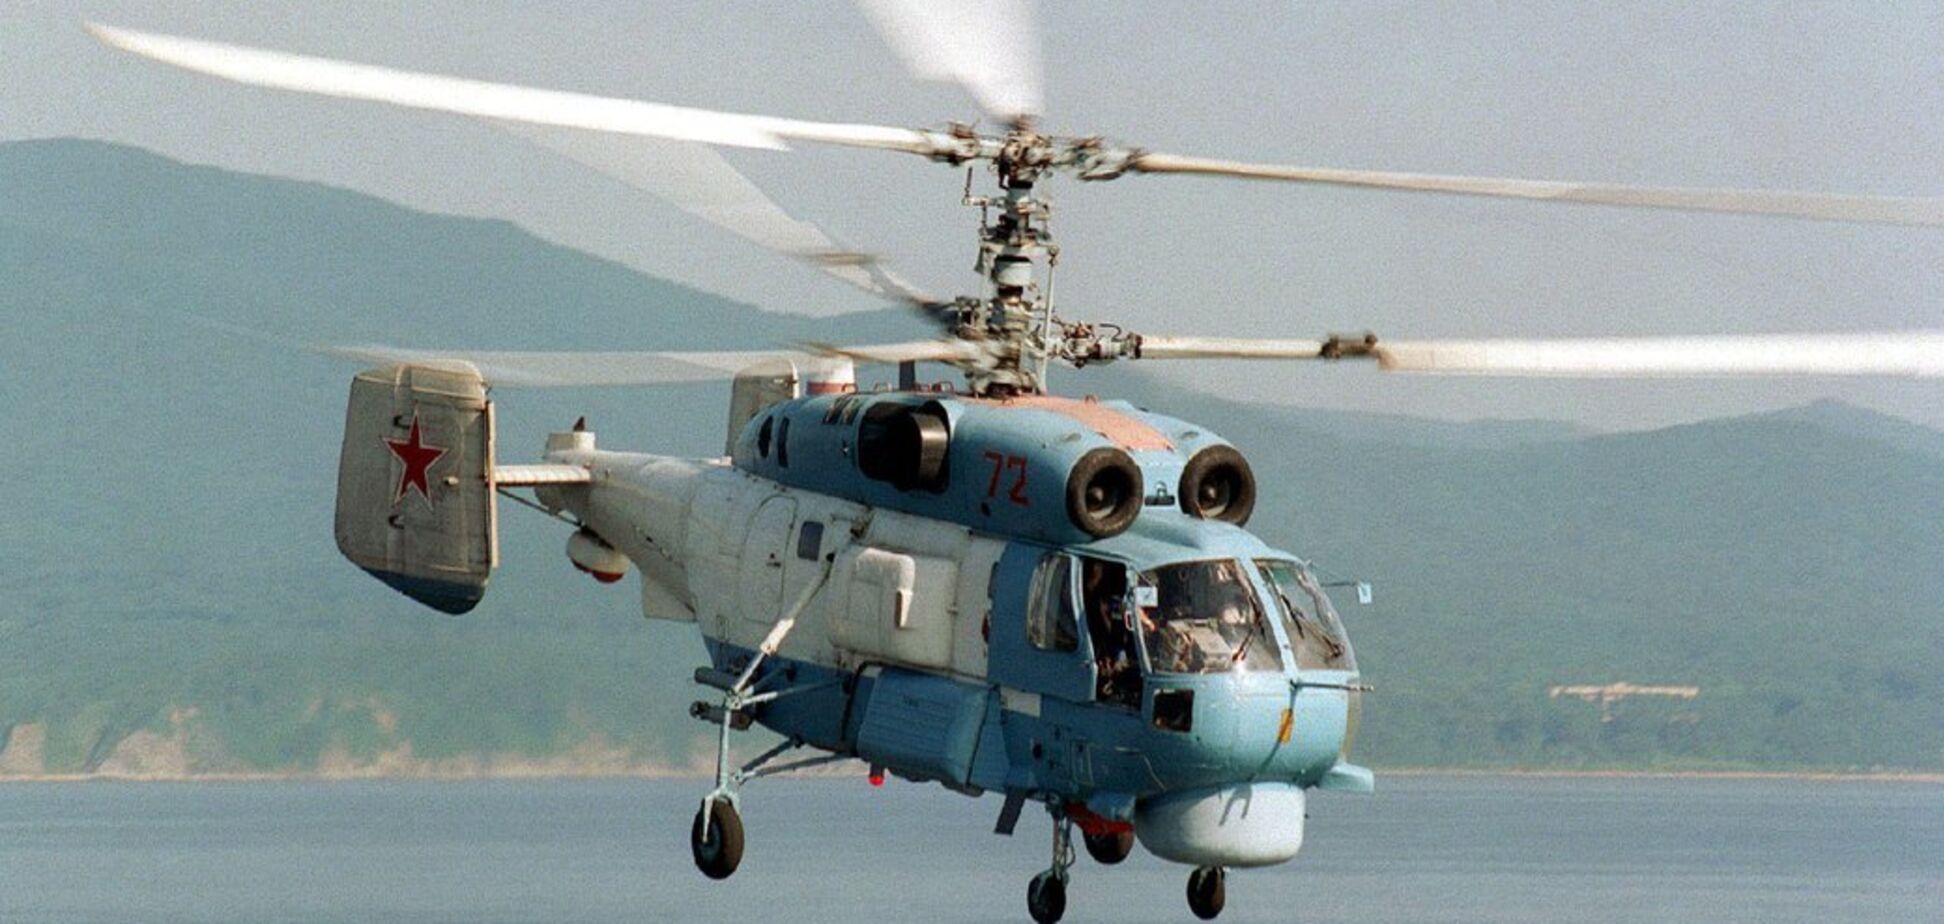 В Крыму взорвался российский вертолет Ка-27, судьба экипажа неизвестна: оккупанты задействовали катер для поисковой операции